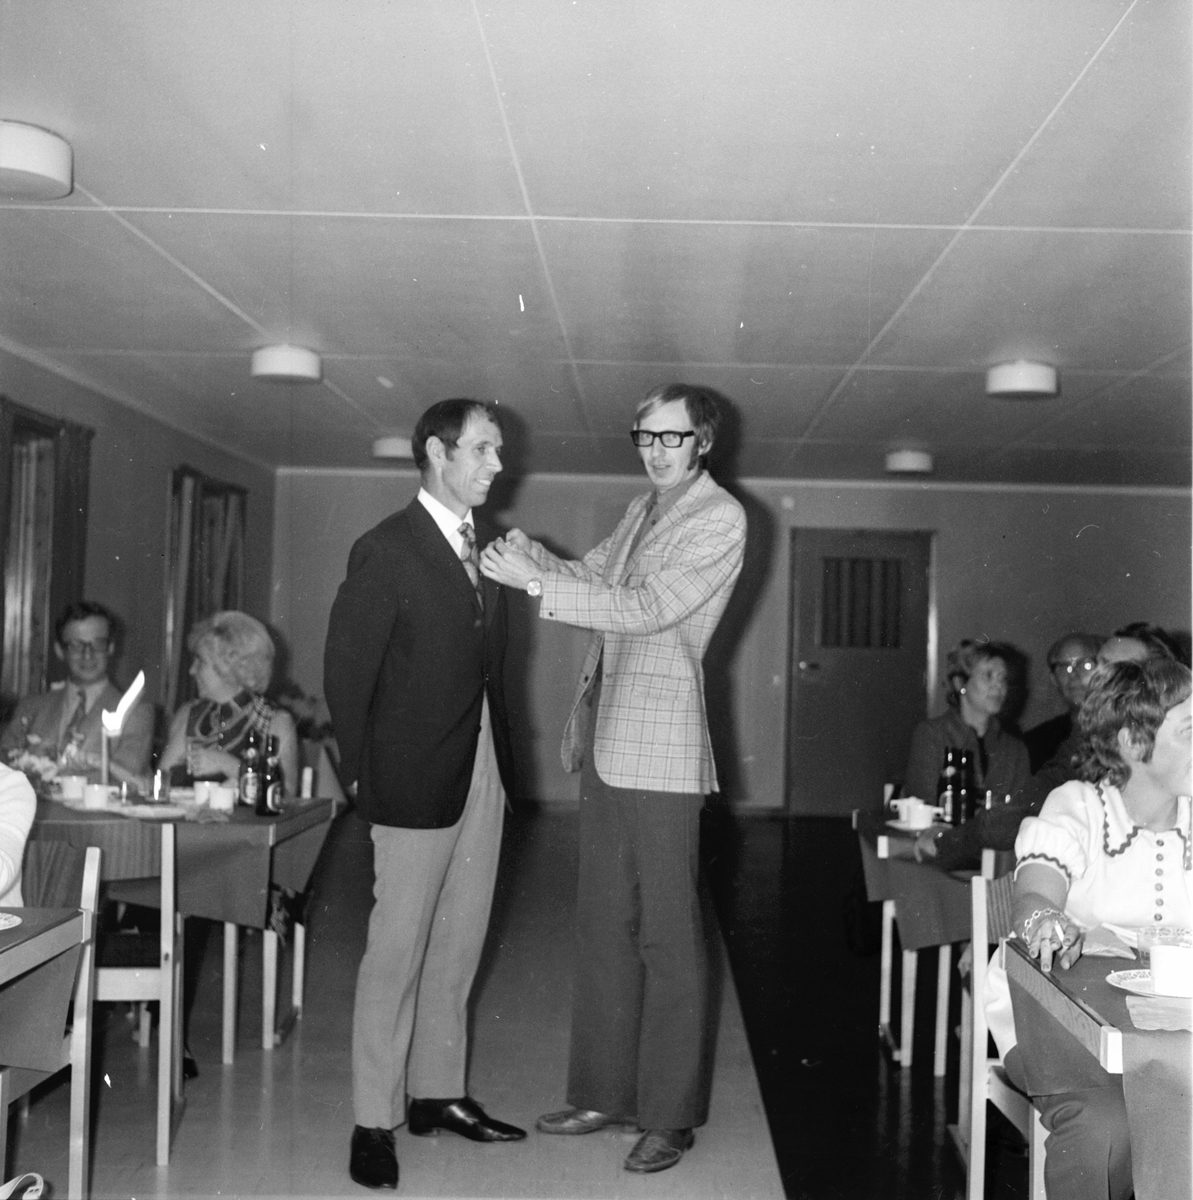 Lionsklubben. Plenar på Orfa
September 1972